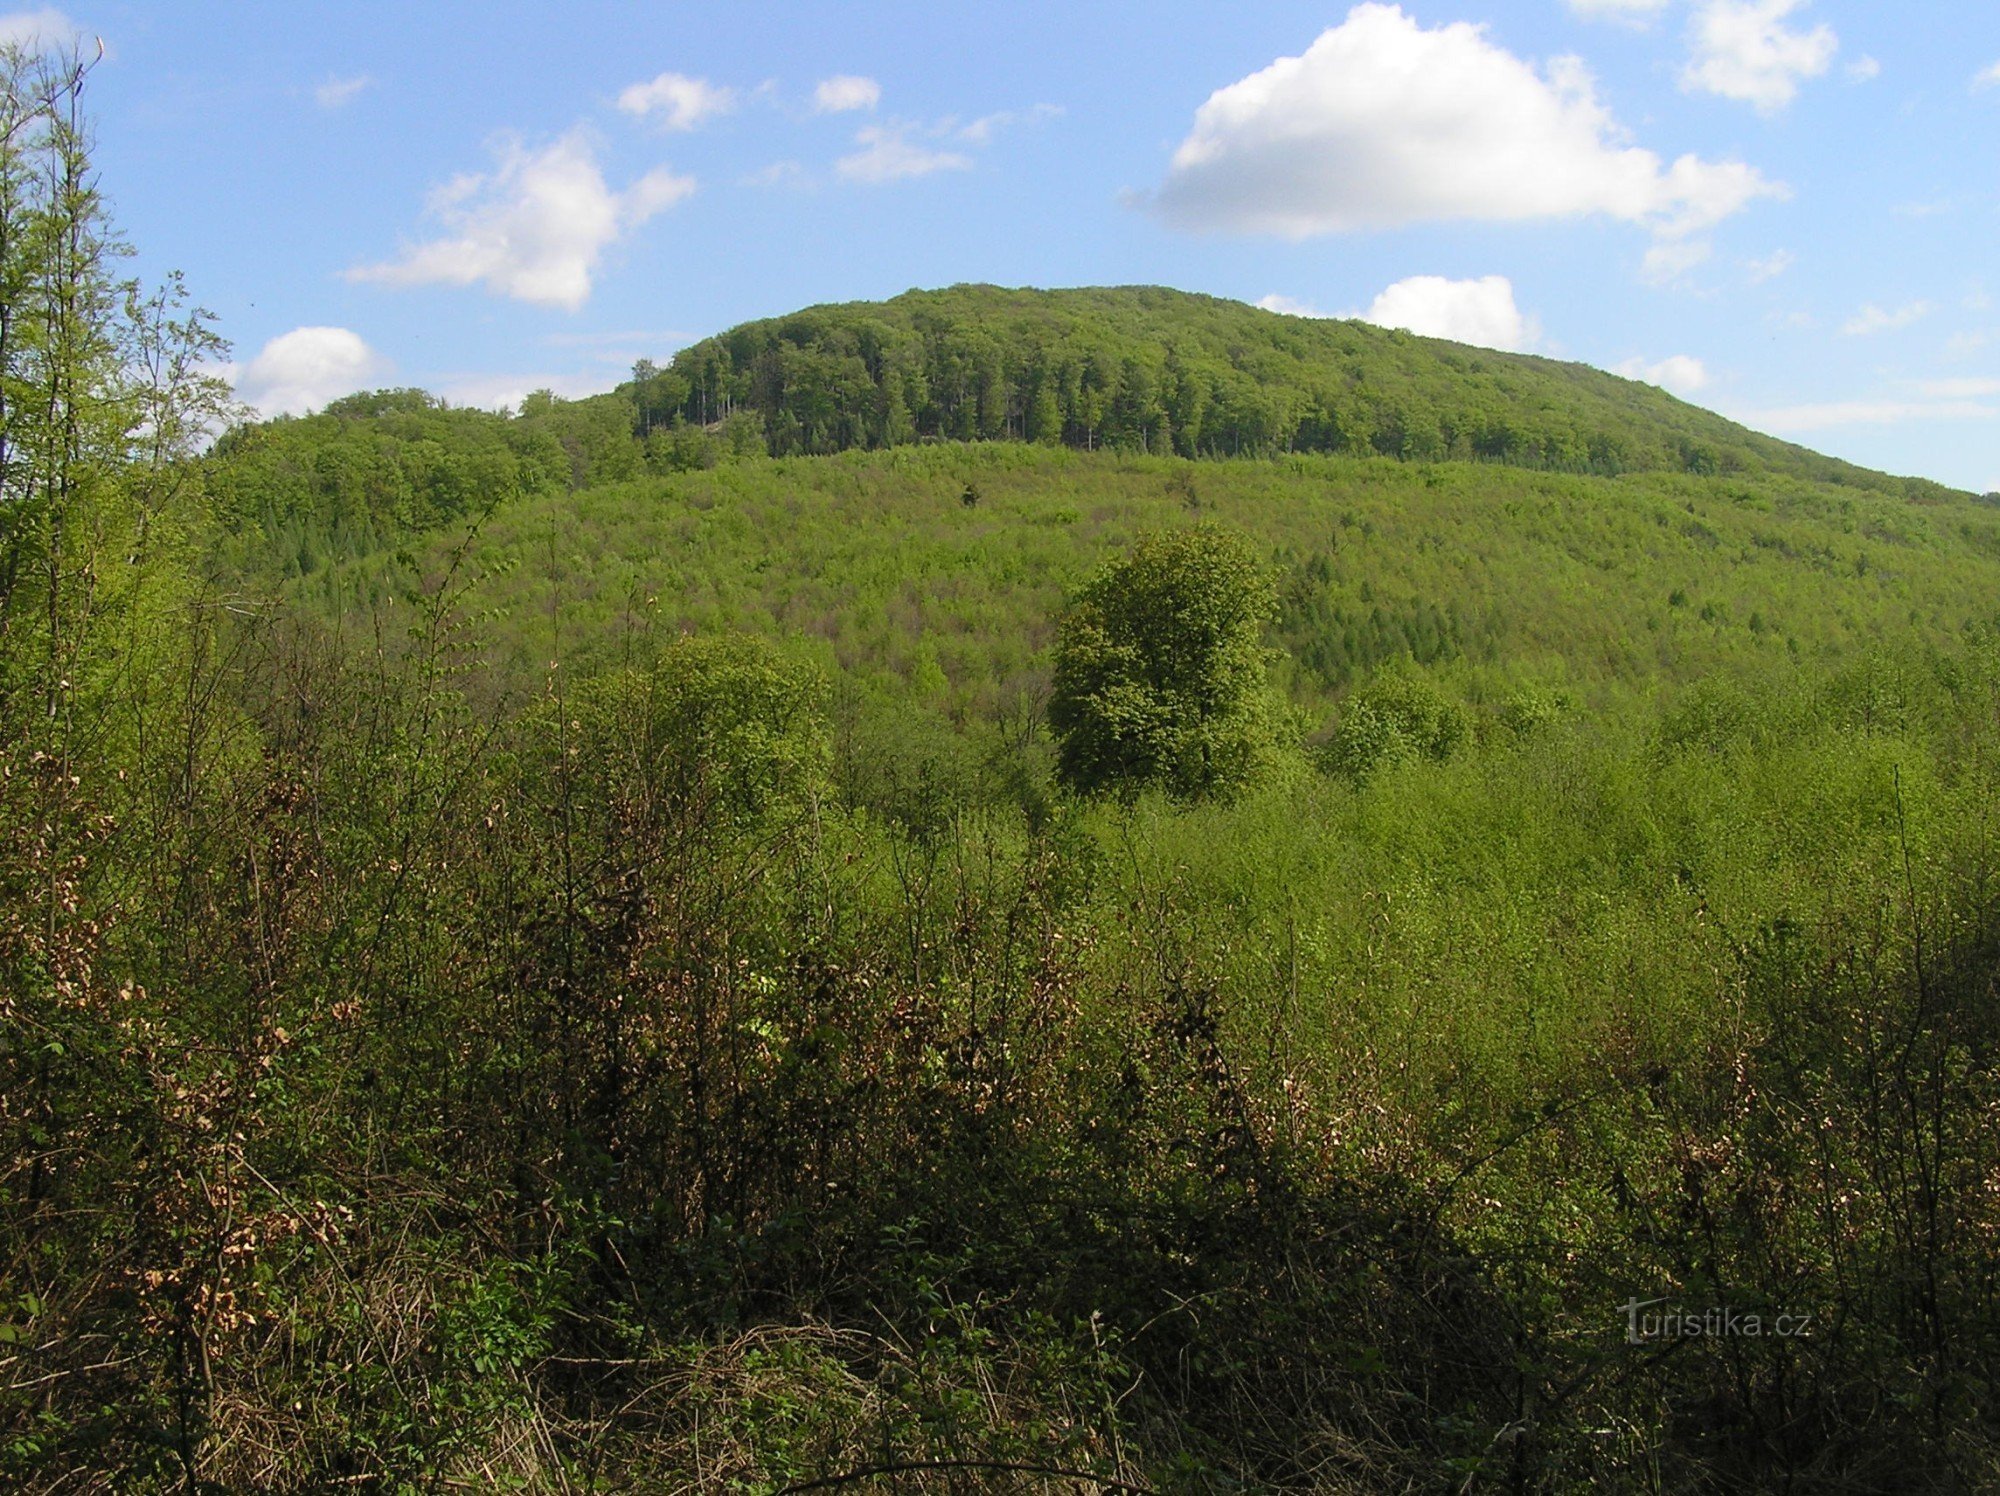 generel udsigt over Holý kopec fra sydvest - reservatet er optaget af en ældre skovporo